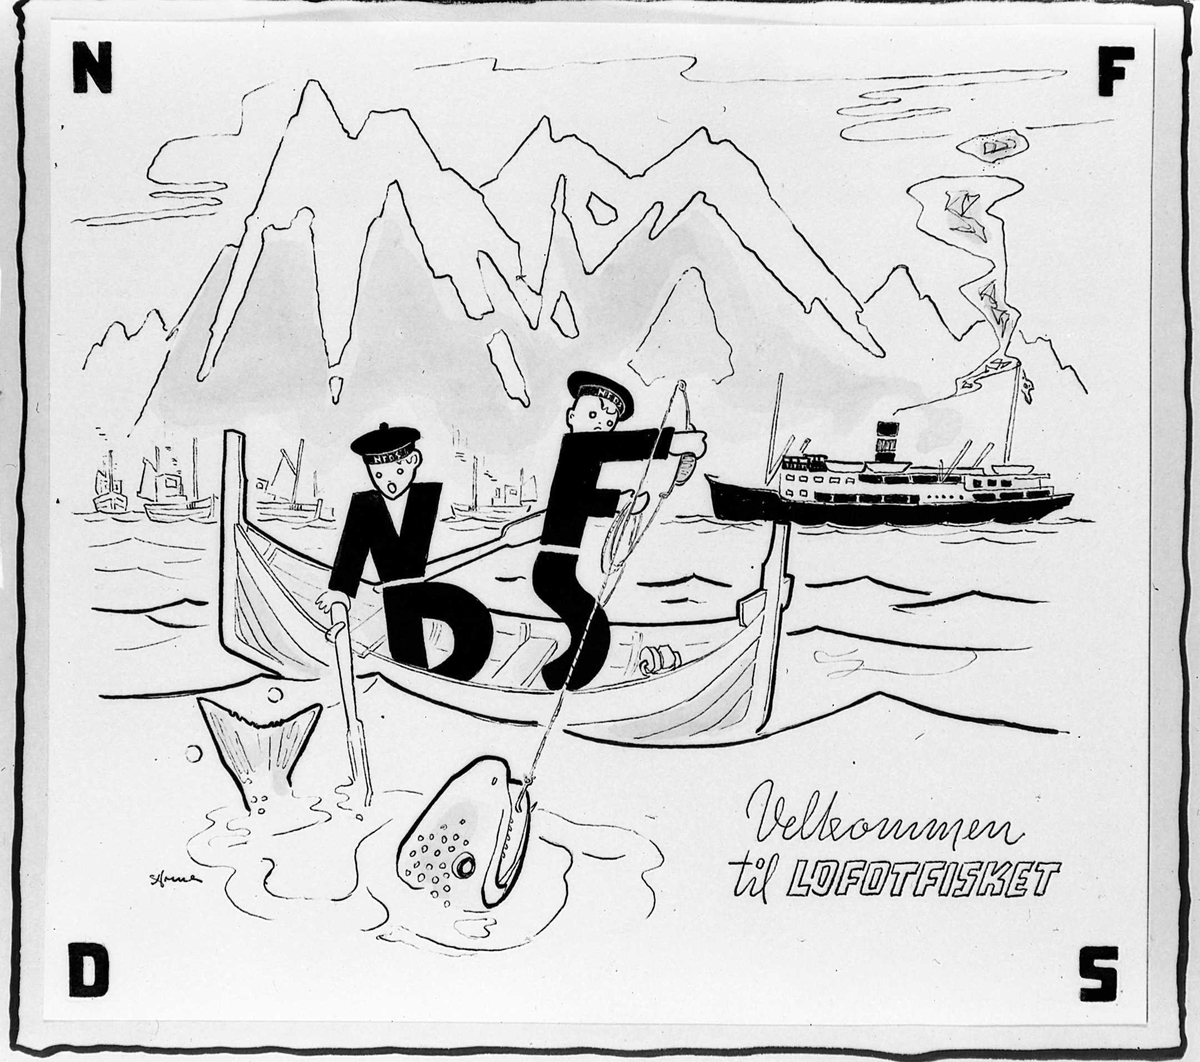 Tegning fra Nordenfjeldske Dampskipsselskap